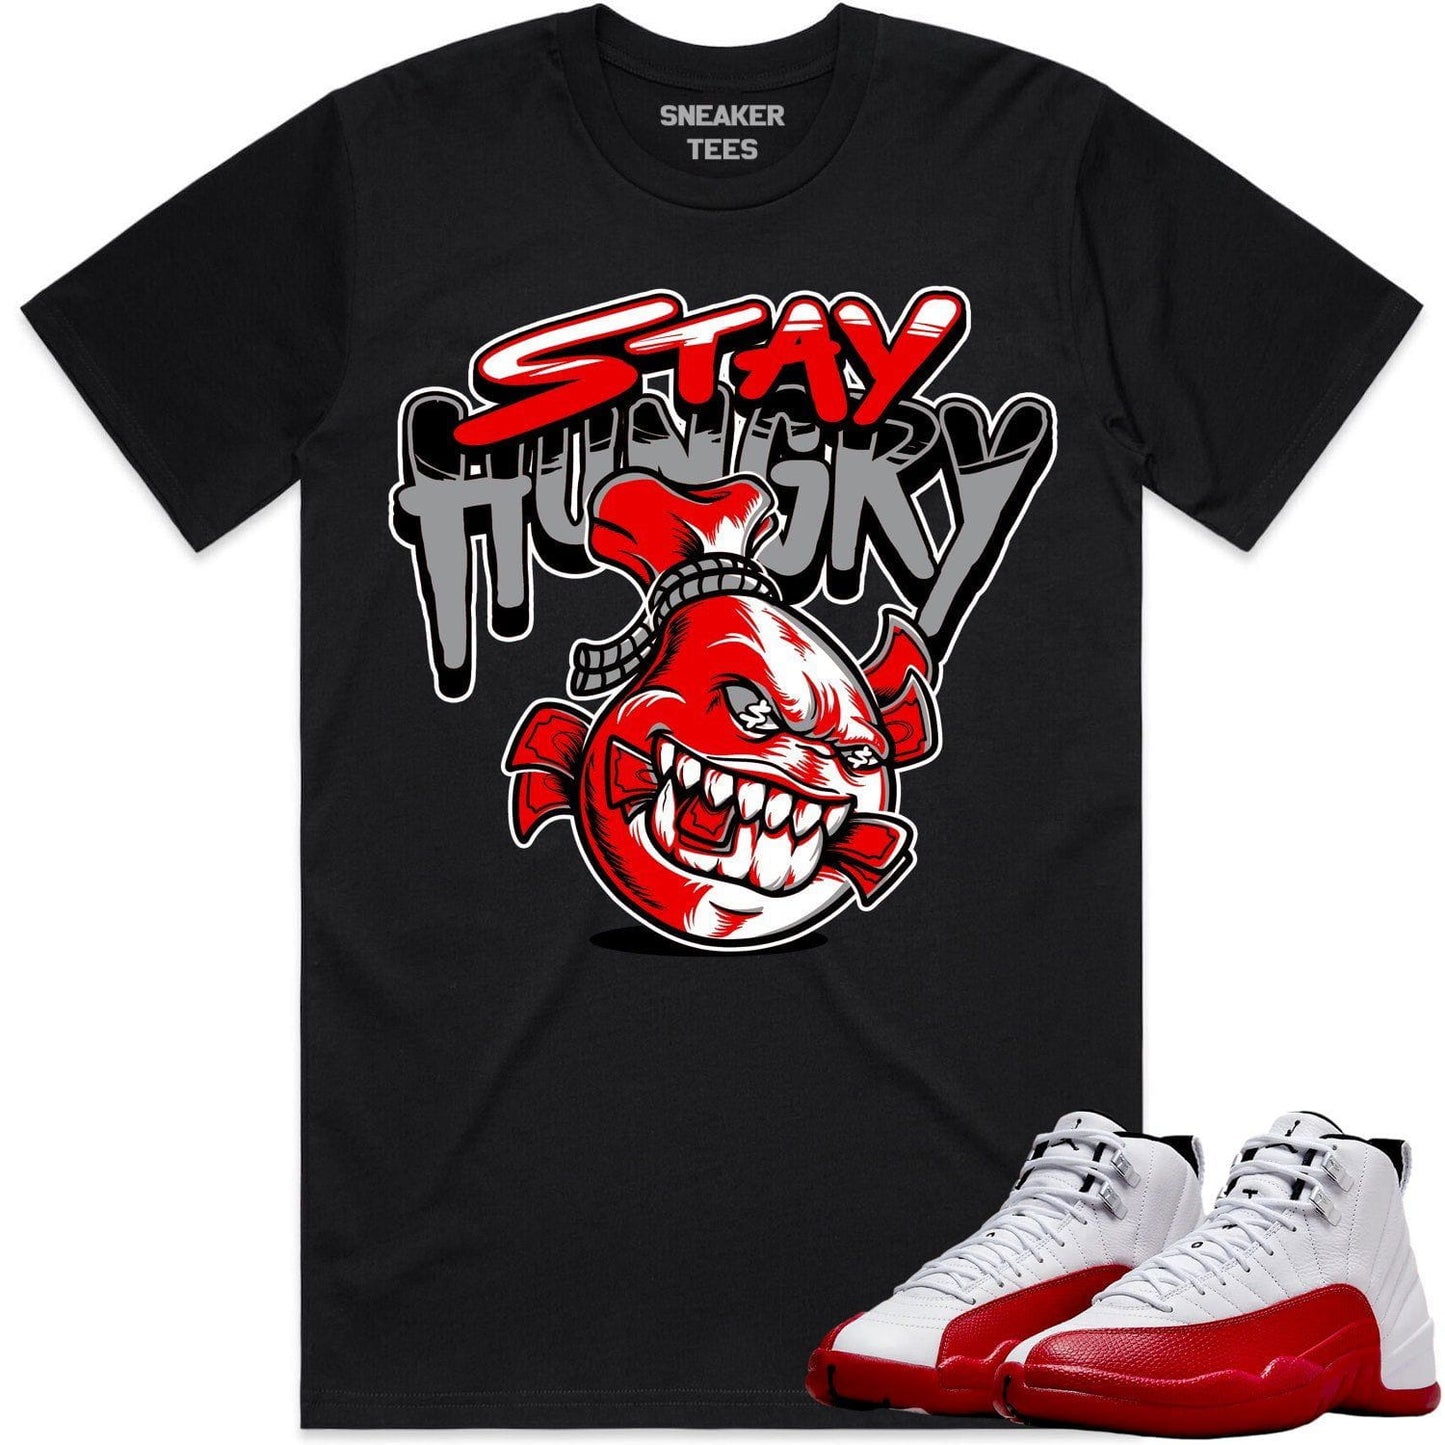 Cherry 12s Shirt - Jordan Retro 12 Cherry Shirts - Red Stay Hungry